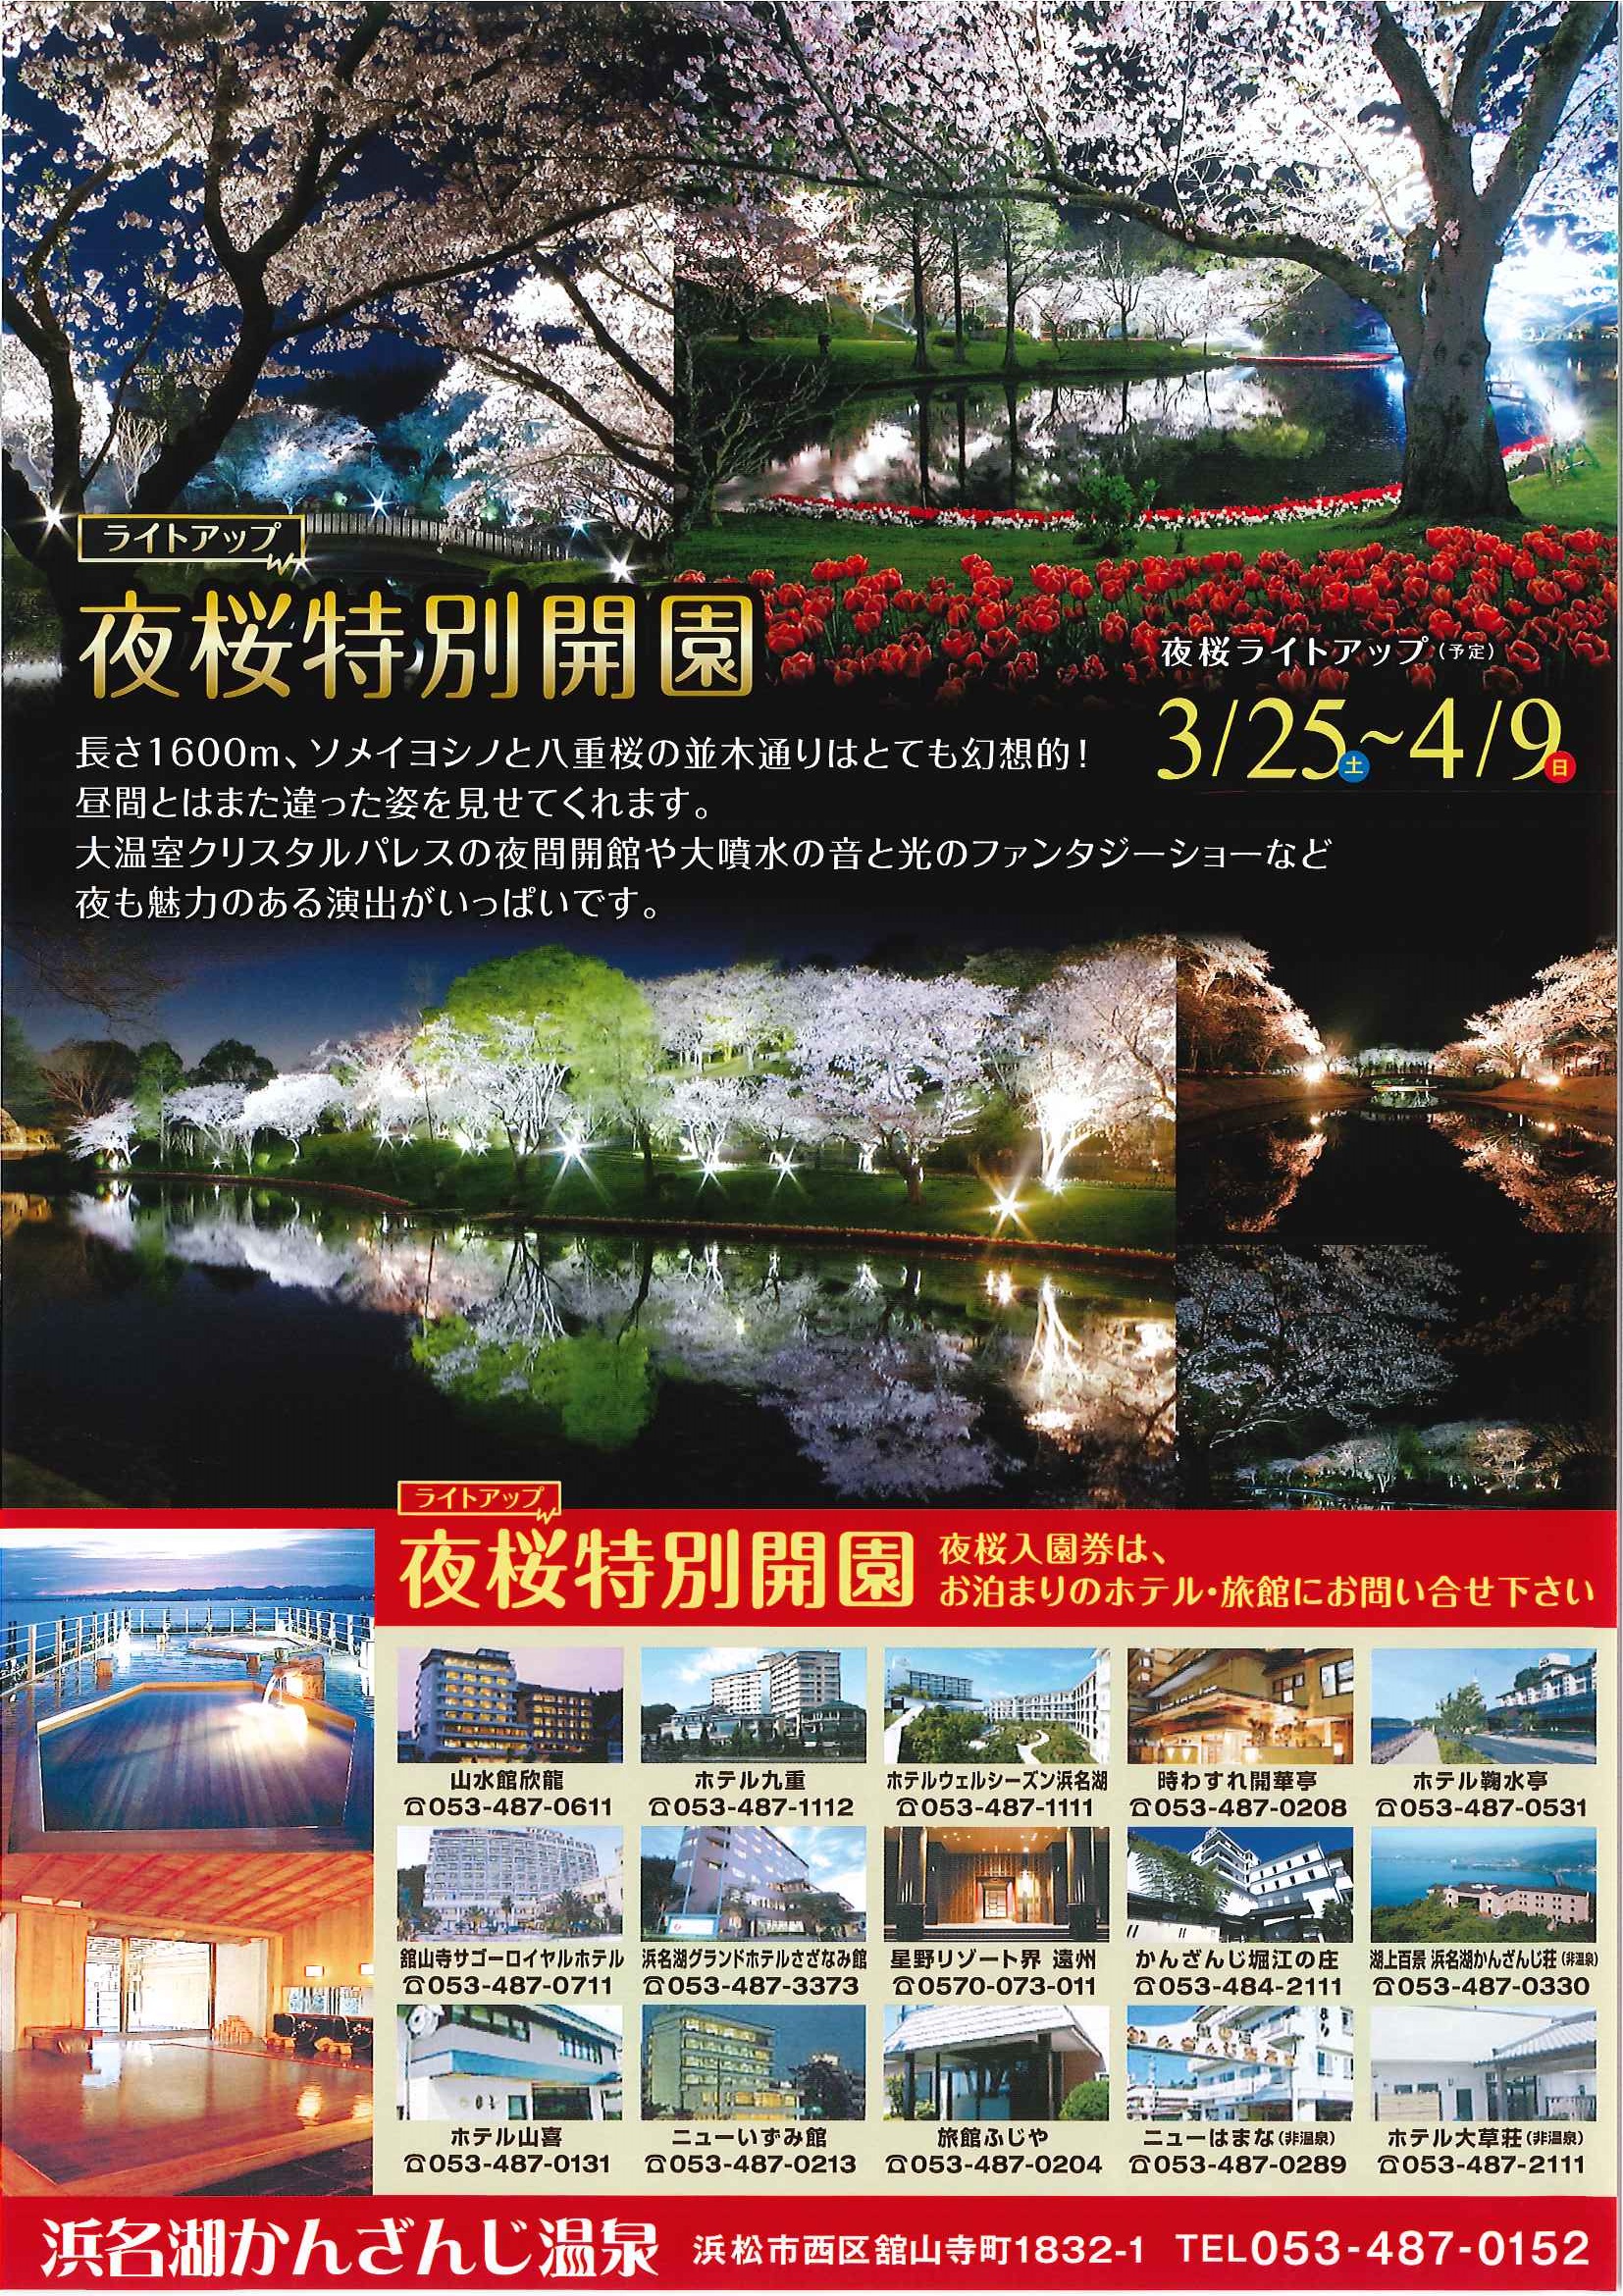 夜桜特別開園 はままつフラワーパーク 浜名湖かんざんじ温泉観光協会